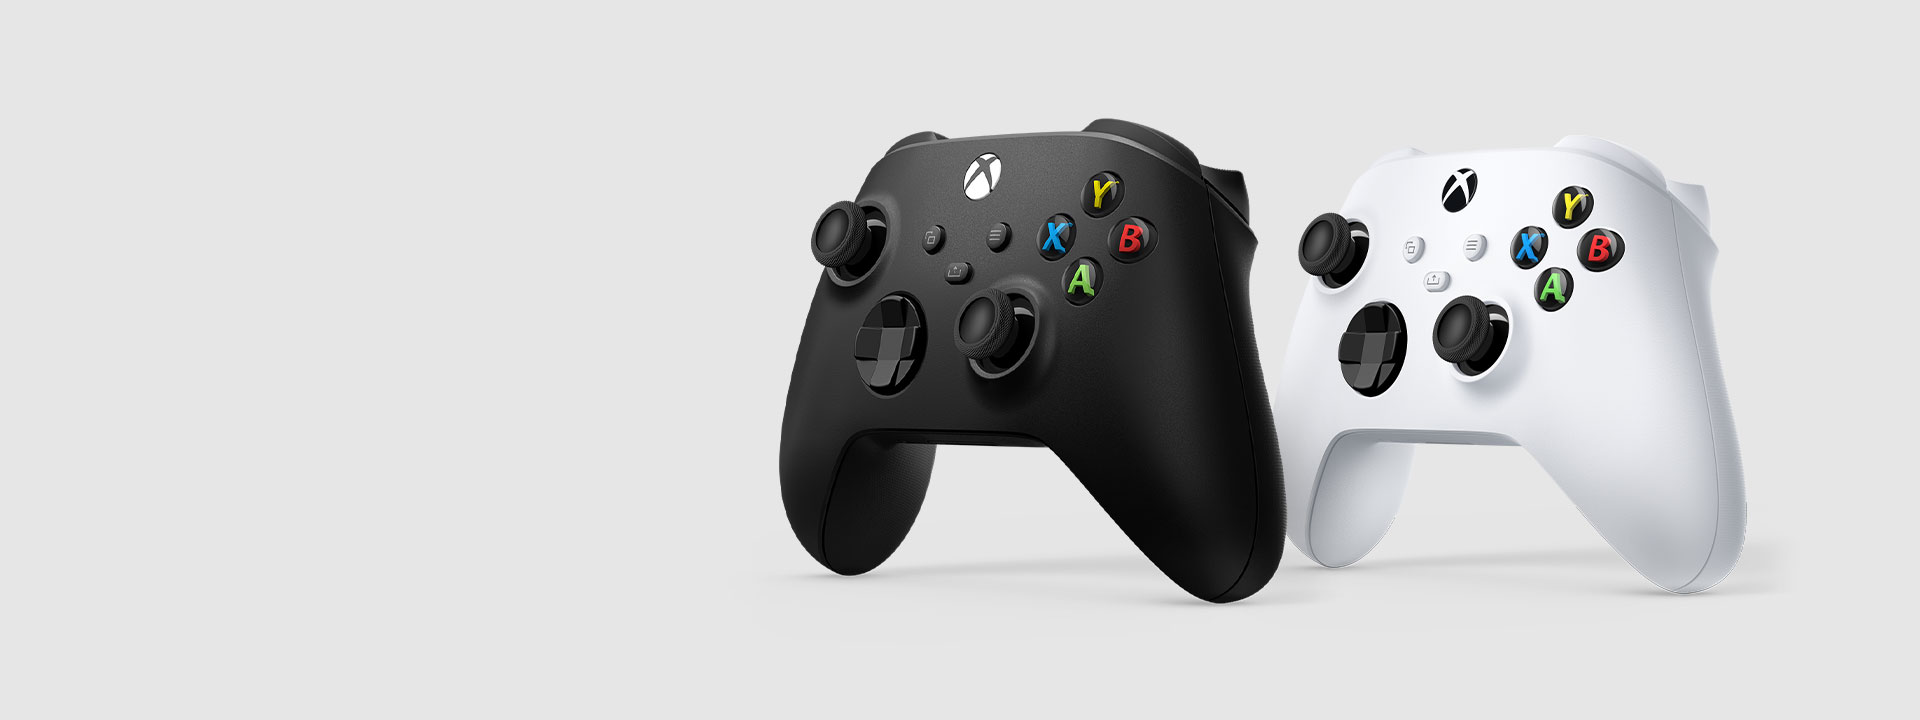 Vista lateral del Control inalámbrico Xbox blanco y negro